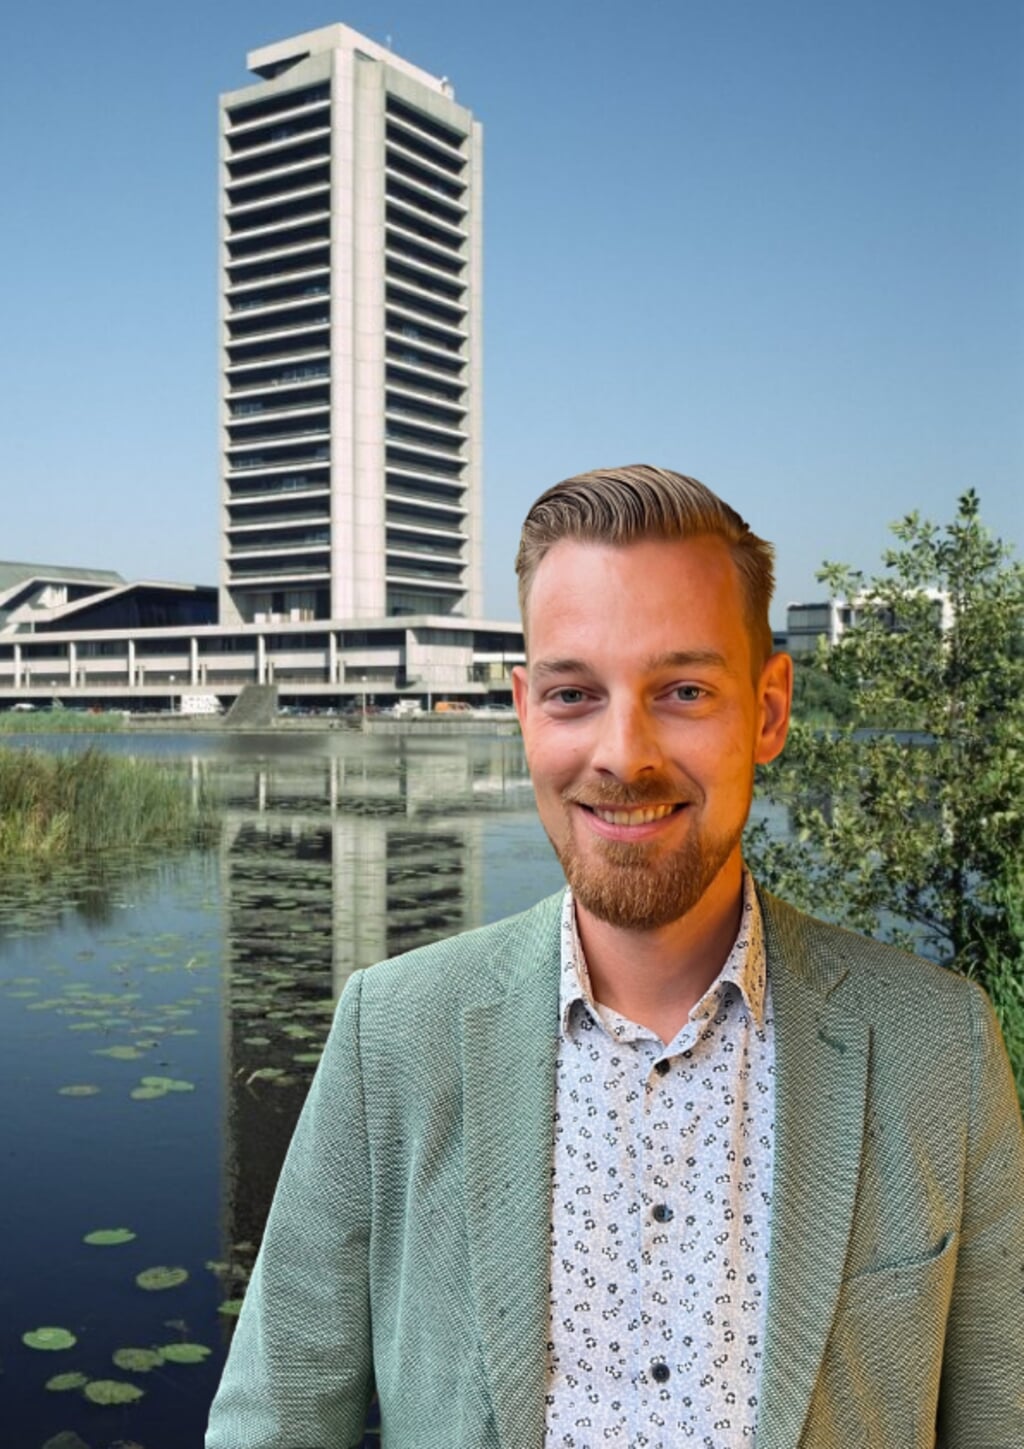 Kasper van de Langenberg uit Boxtel maakt volgend jaar goede kans om namens D66 in de Provinciale Staten terecht te komen na de verkiezingen. Hij staat op de derde plaats.